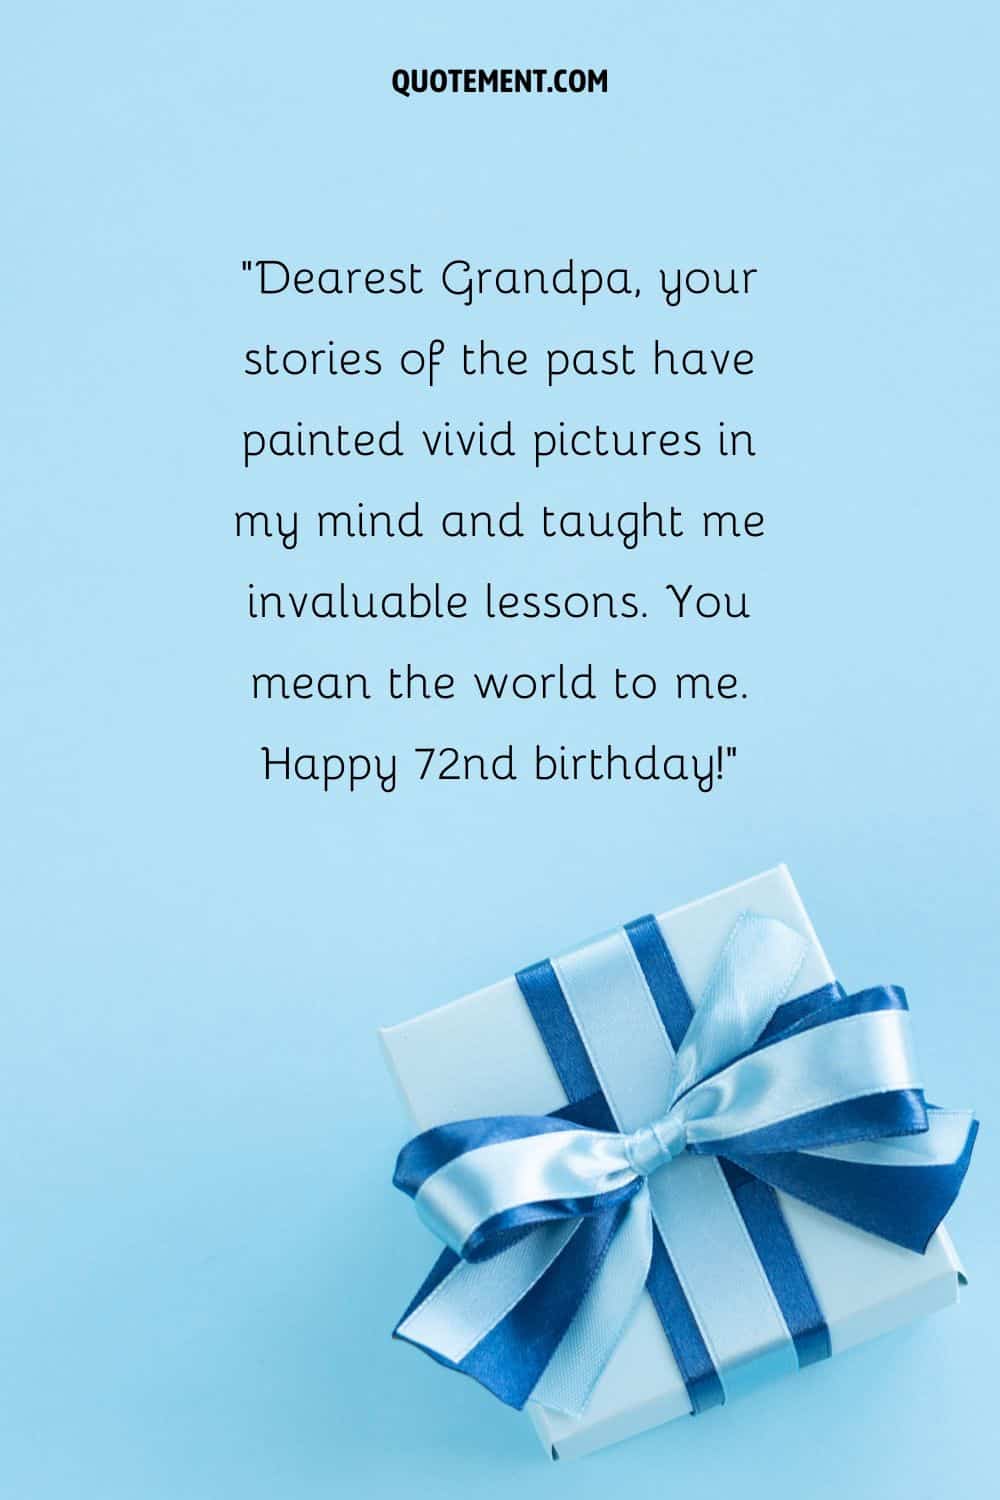 regalo de cumpleaños que representa un deseo de feliz cumpleaños para el abuelo que cumple 72 años